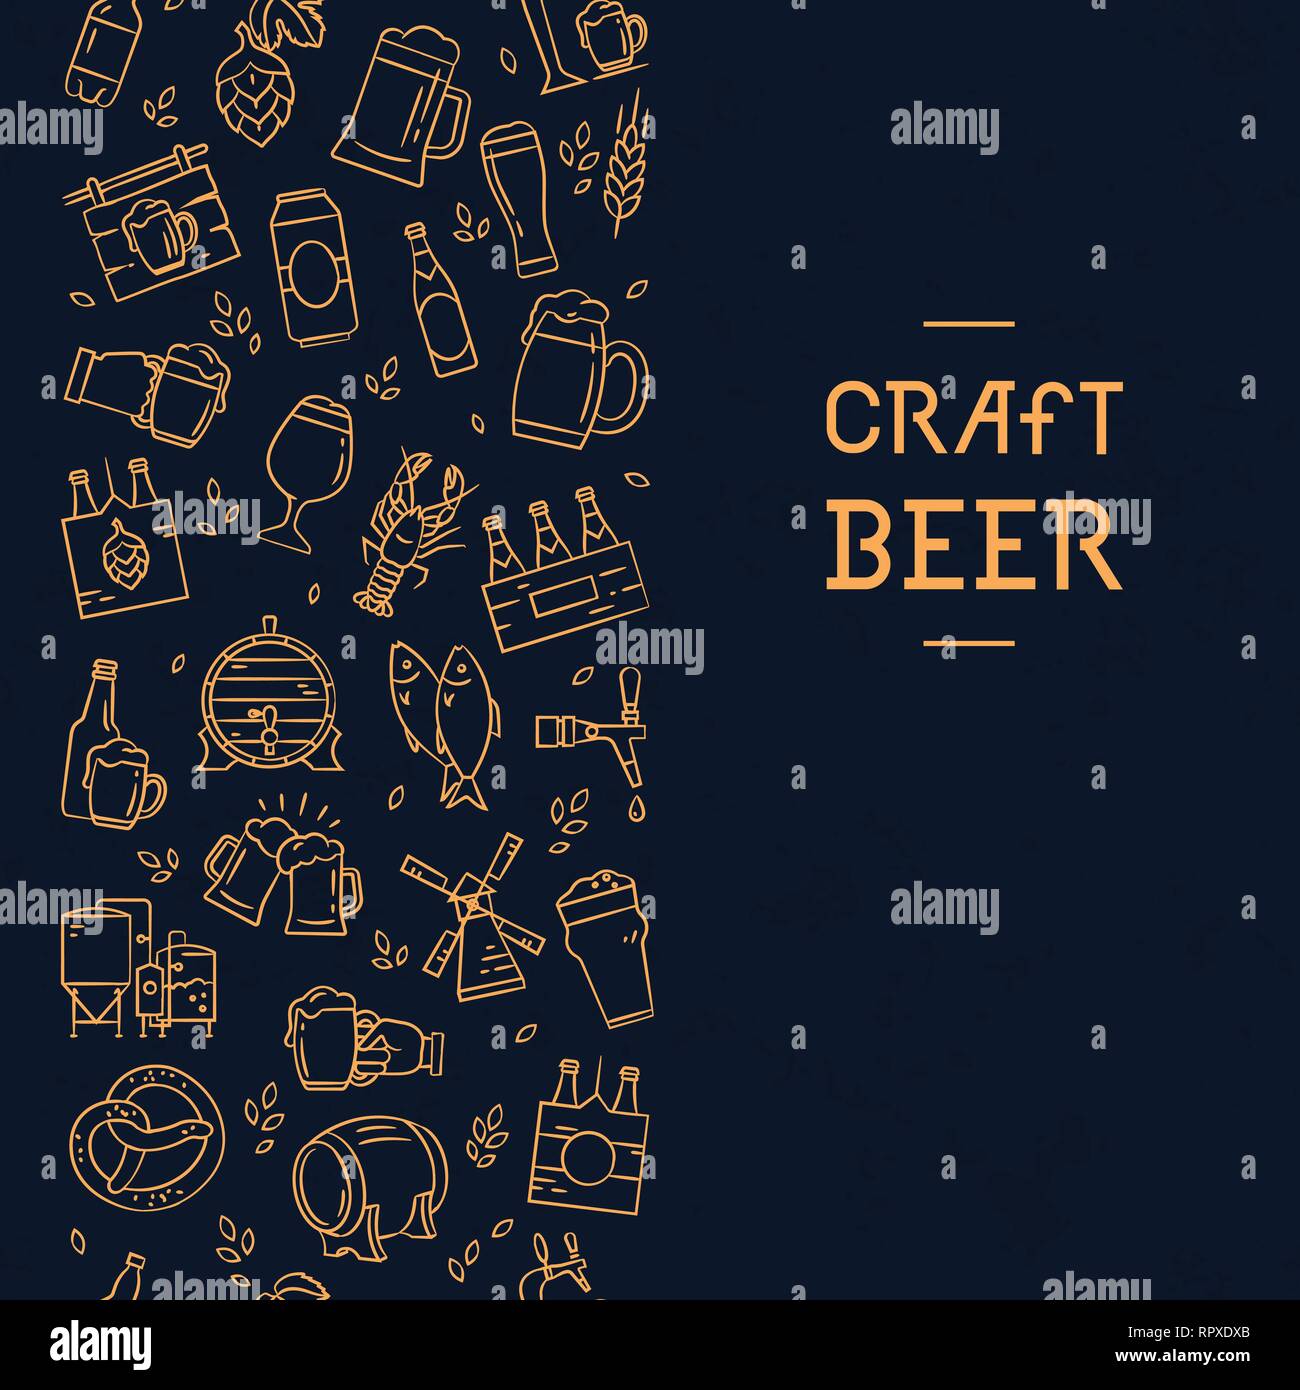 Dunkle nahtlose vertikale Muster Bier von handgezeichneten Symbole auf das Thema des Bieres, seine Herstellung und Verwendung im Vektorformat. Handgezeichneten flachbild Symbole in diesem p Stock Vektor